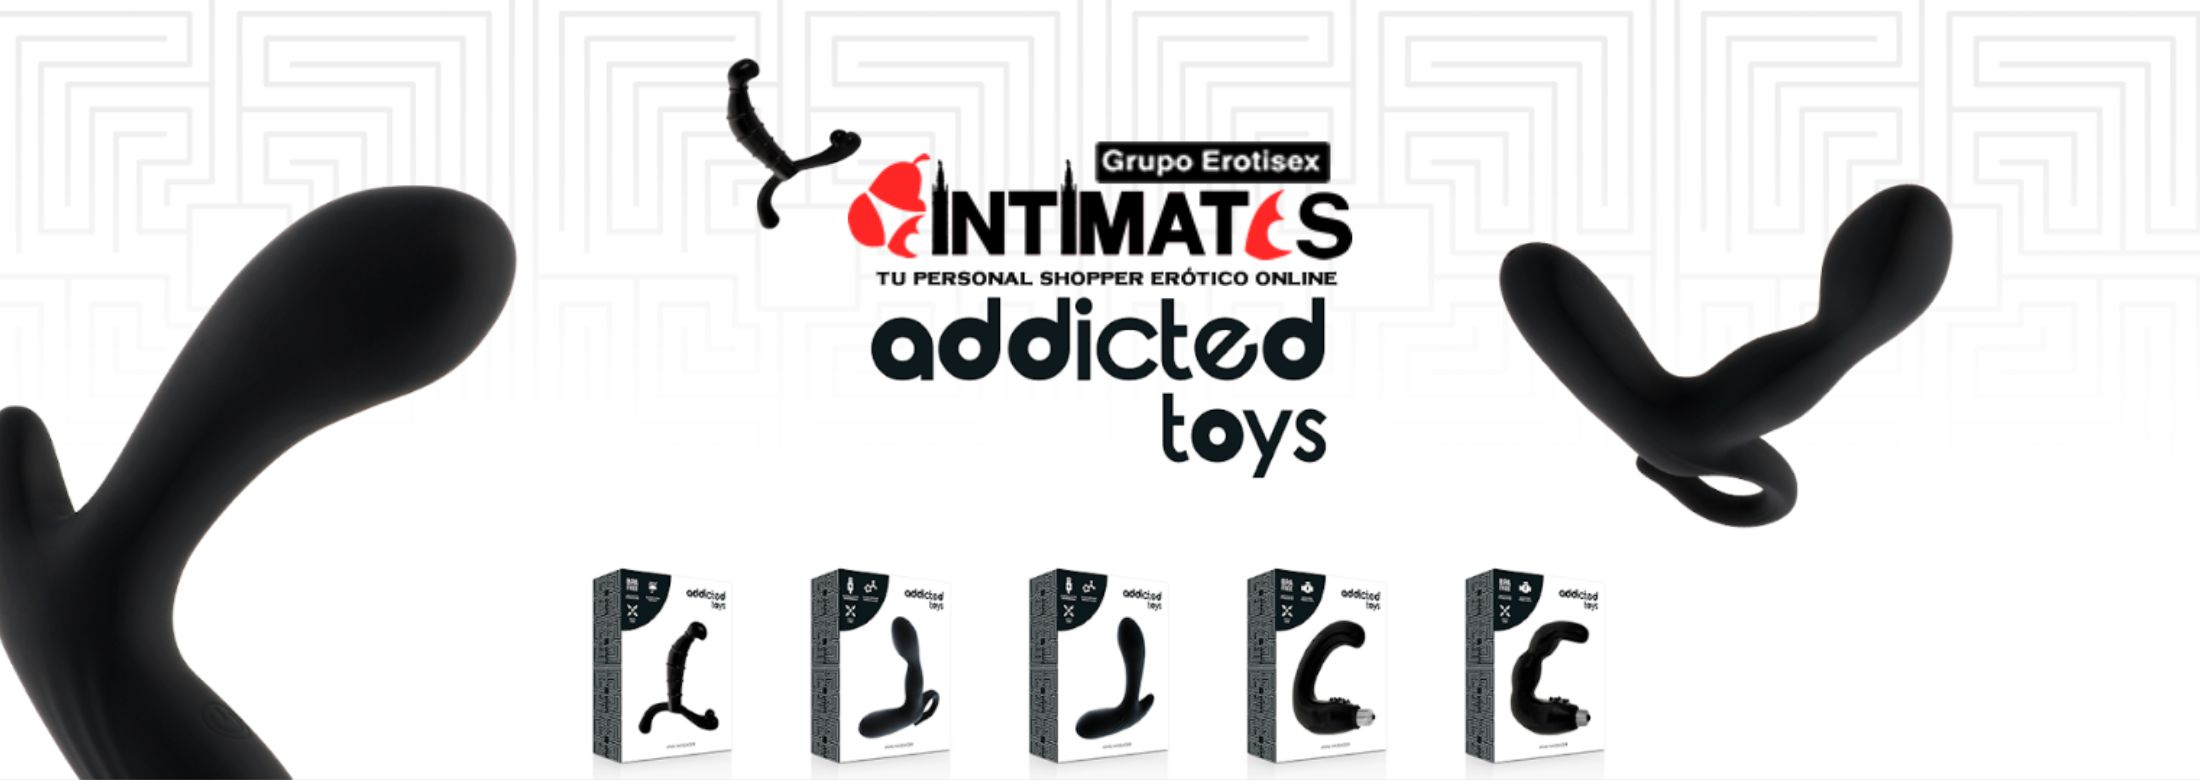 Juguetes eróticos Addicted Toys, que puedes adquirir en intimates.es "Tu Personal Shopper Erótico Online" 